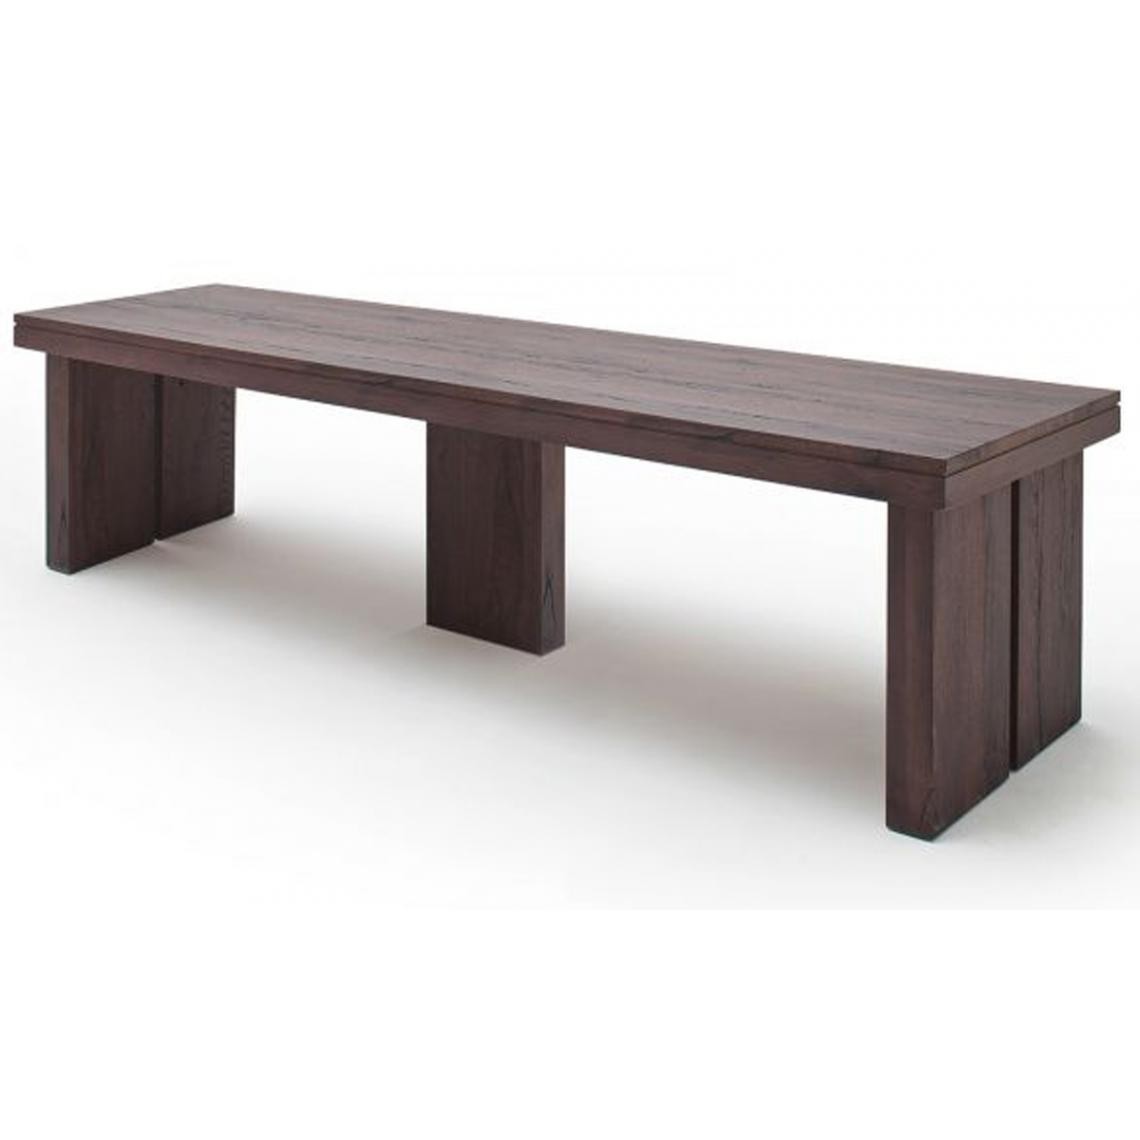 Pegane - Table à manger rectangulaire en chêne massif patiné laqué mat - L.400 x H.76 x P.120 cm - Tables à manger